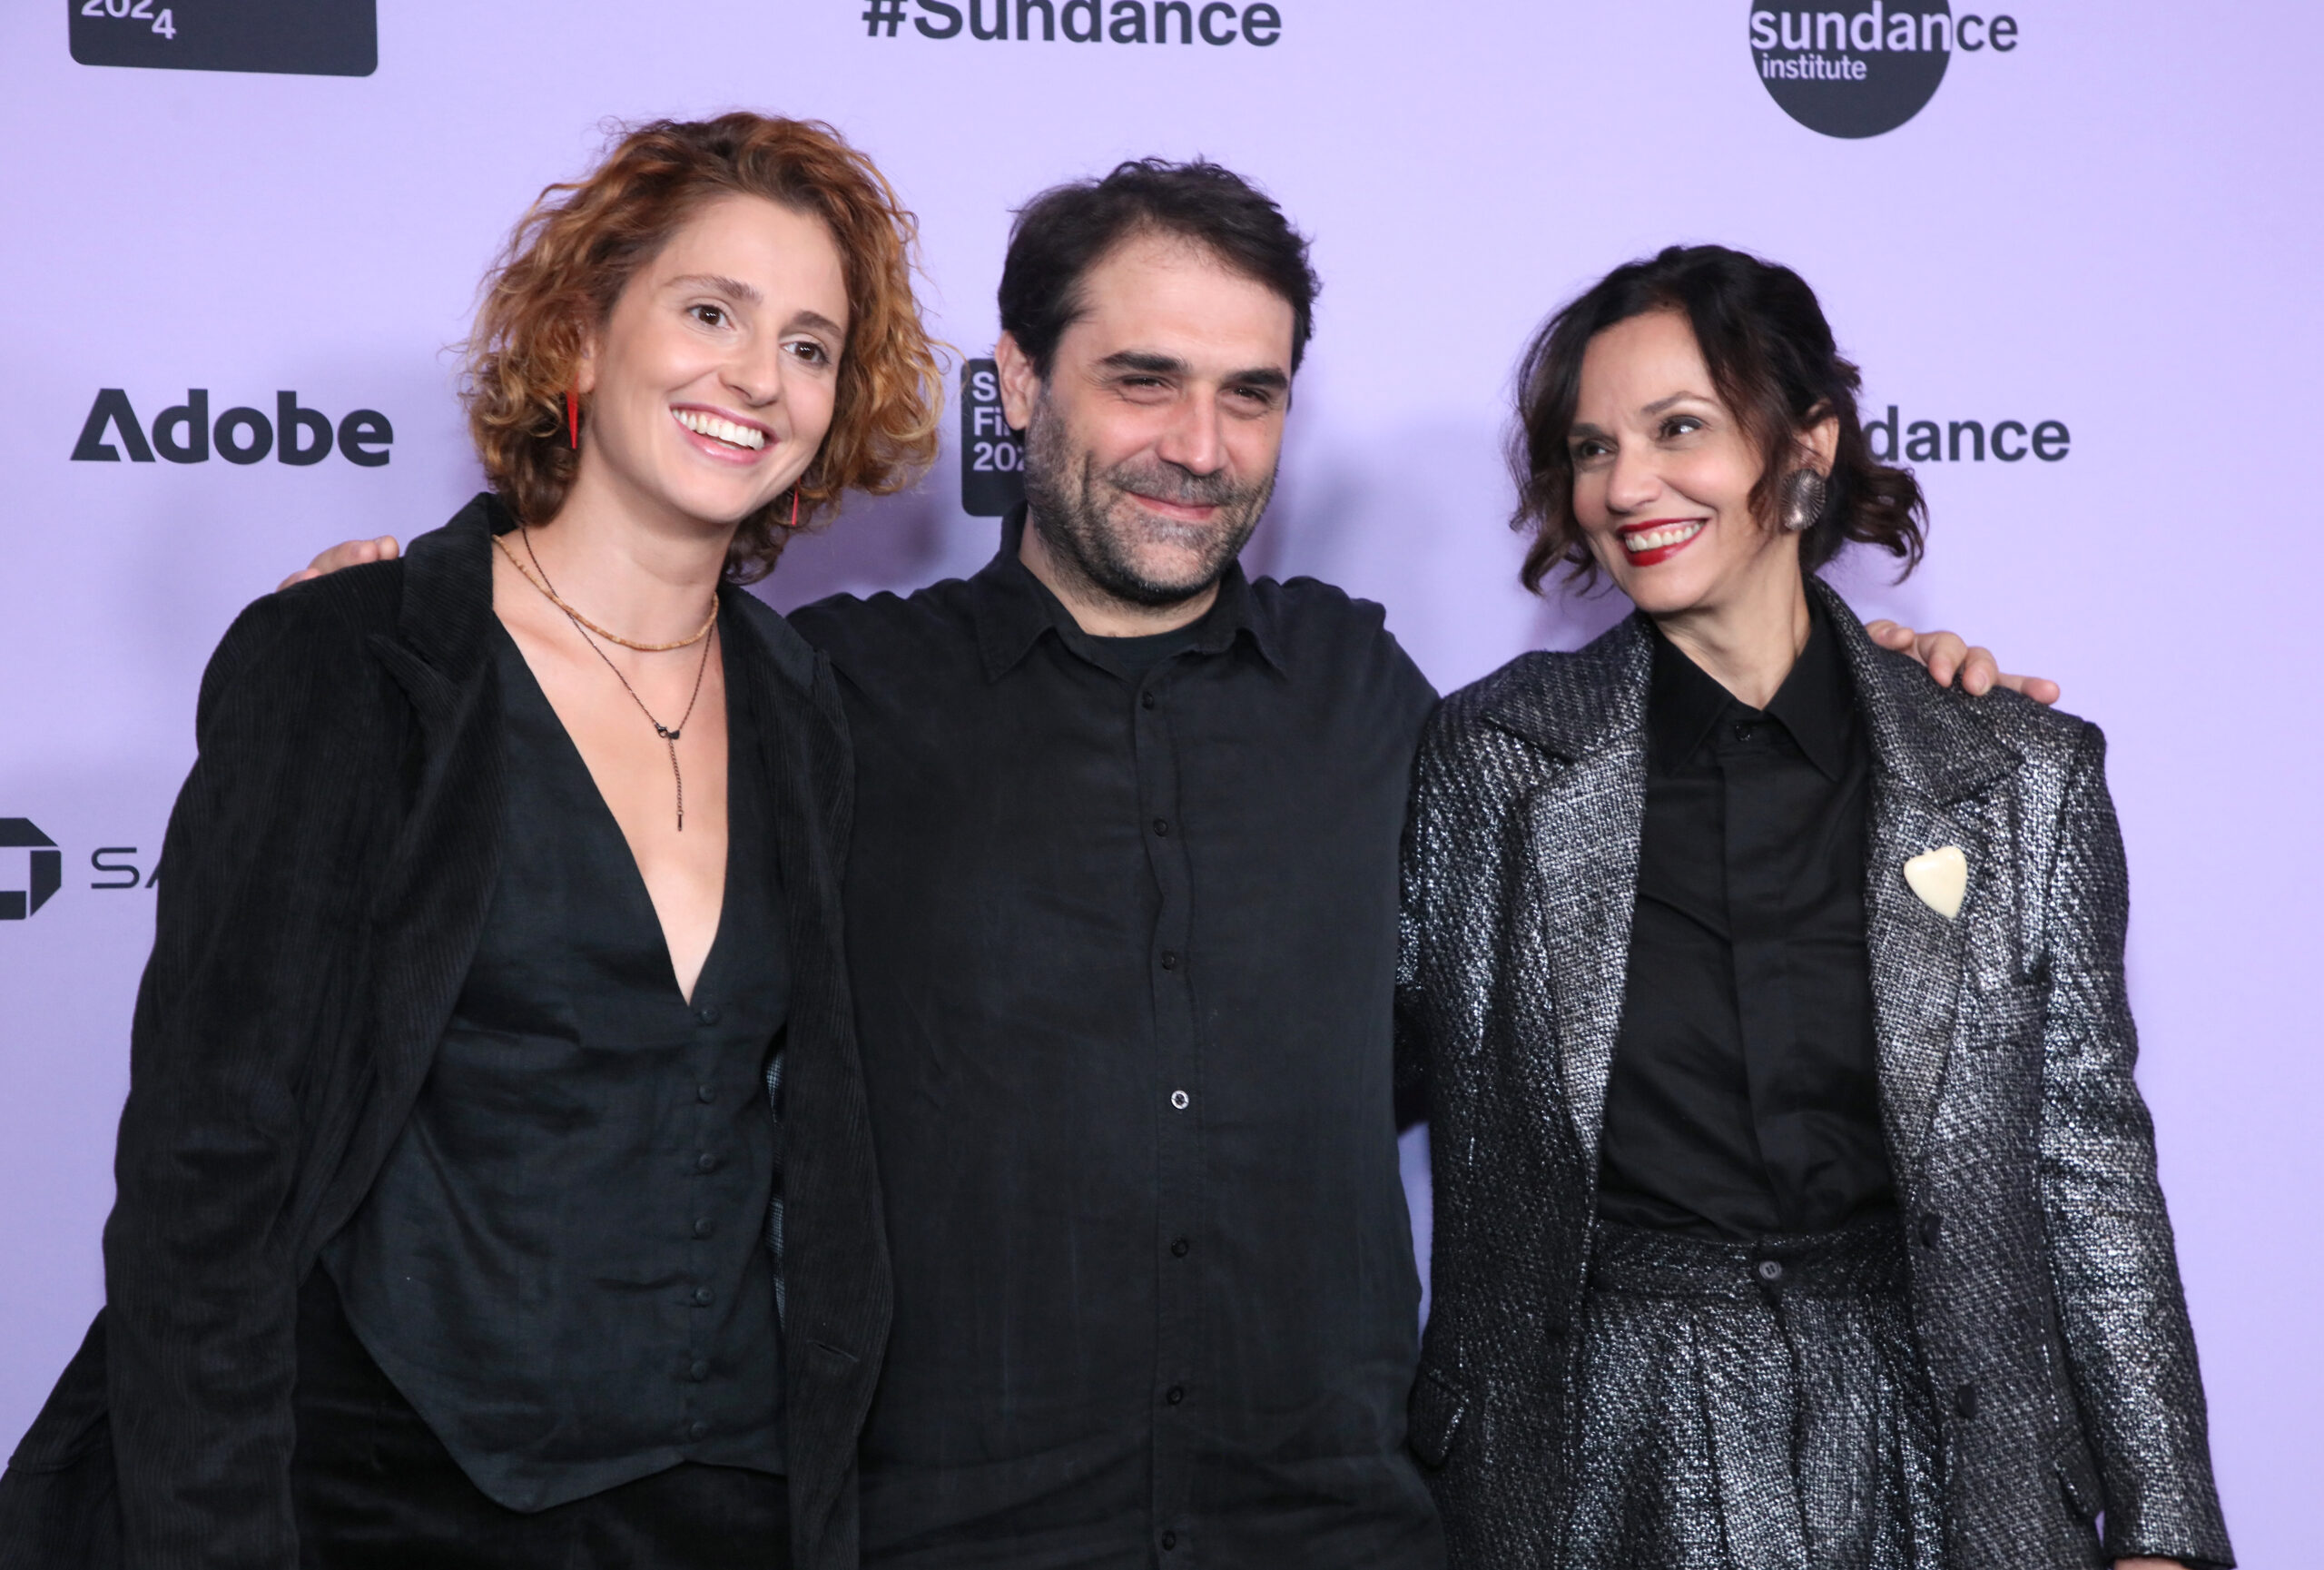 Two women flank a bearded man in front of a Sundance Film Festival backdrop.